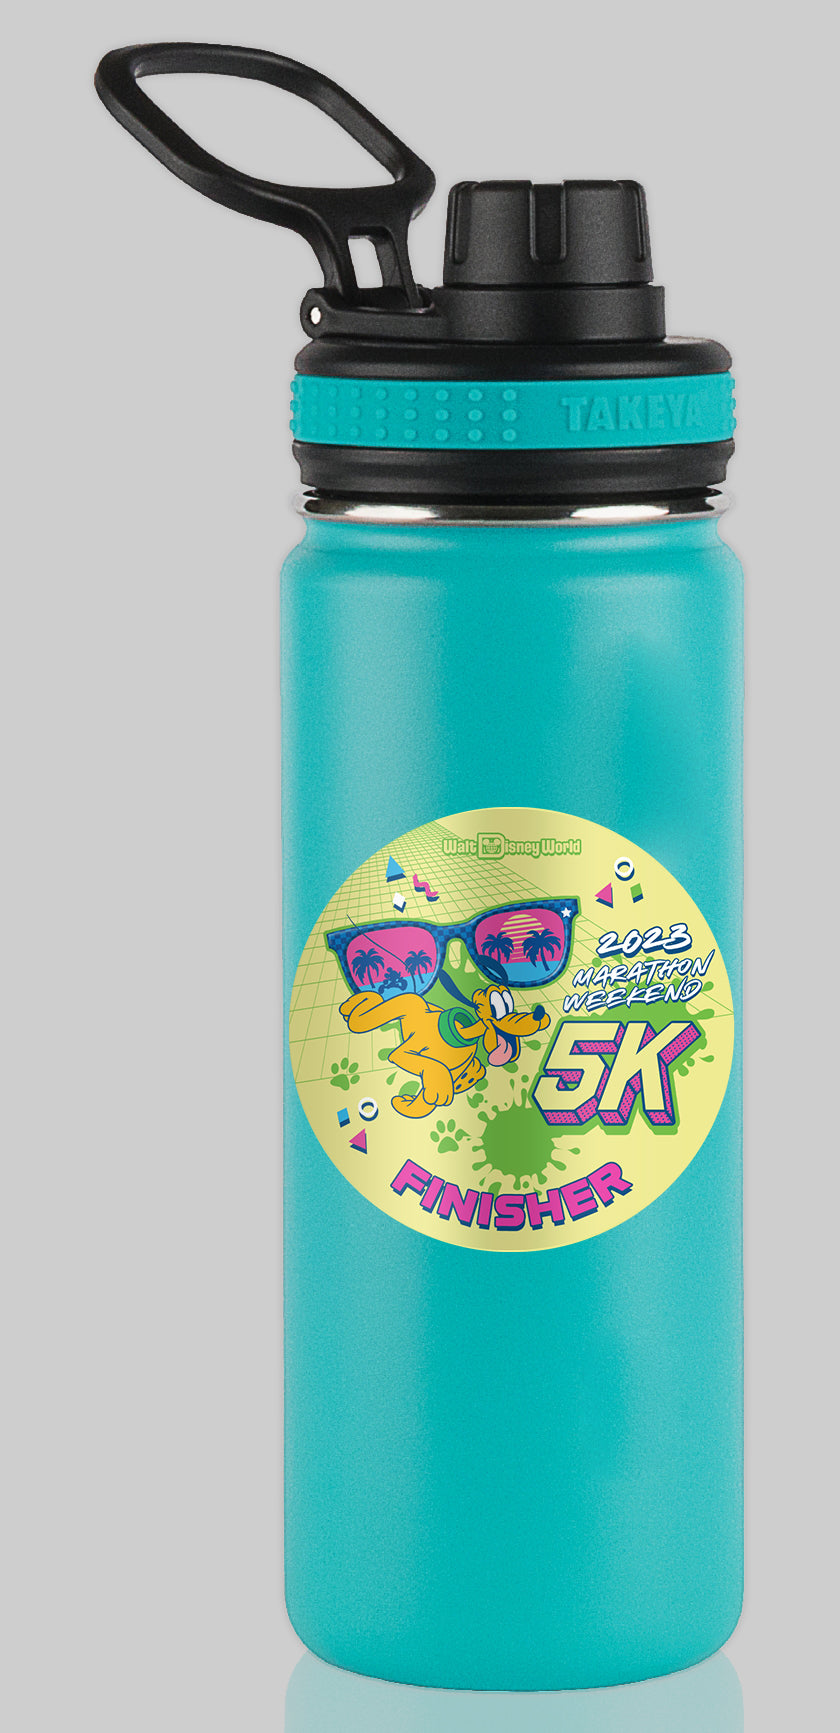 RunDisney Marathon Weekend 2023 5K 3.1 Miles FINISHER Water Bottle Mug Sticker